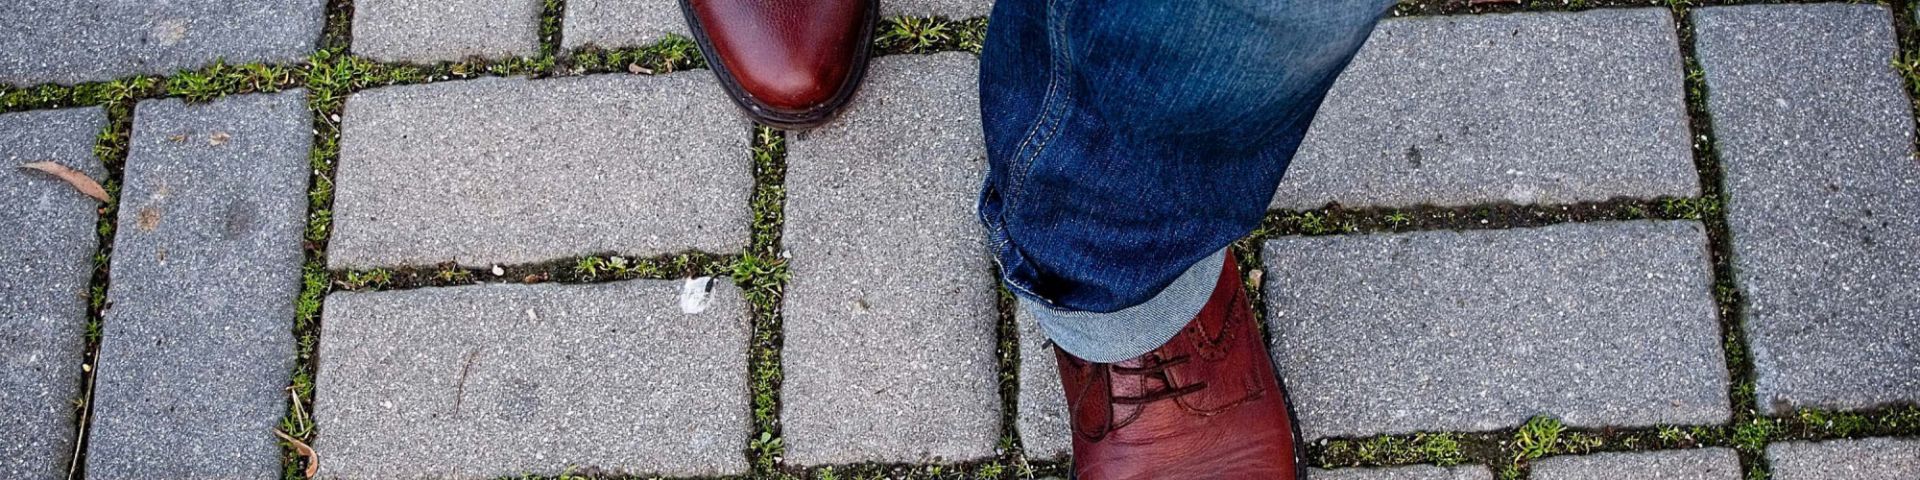 A man's feet walk on a sidewalk.